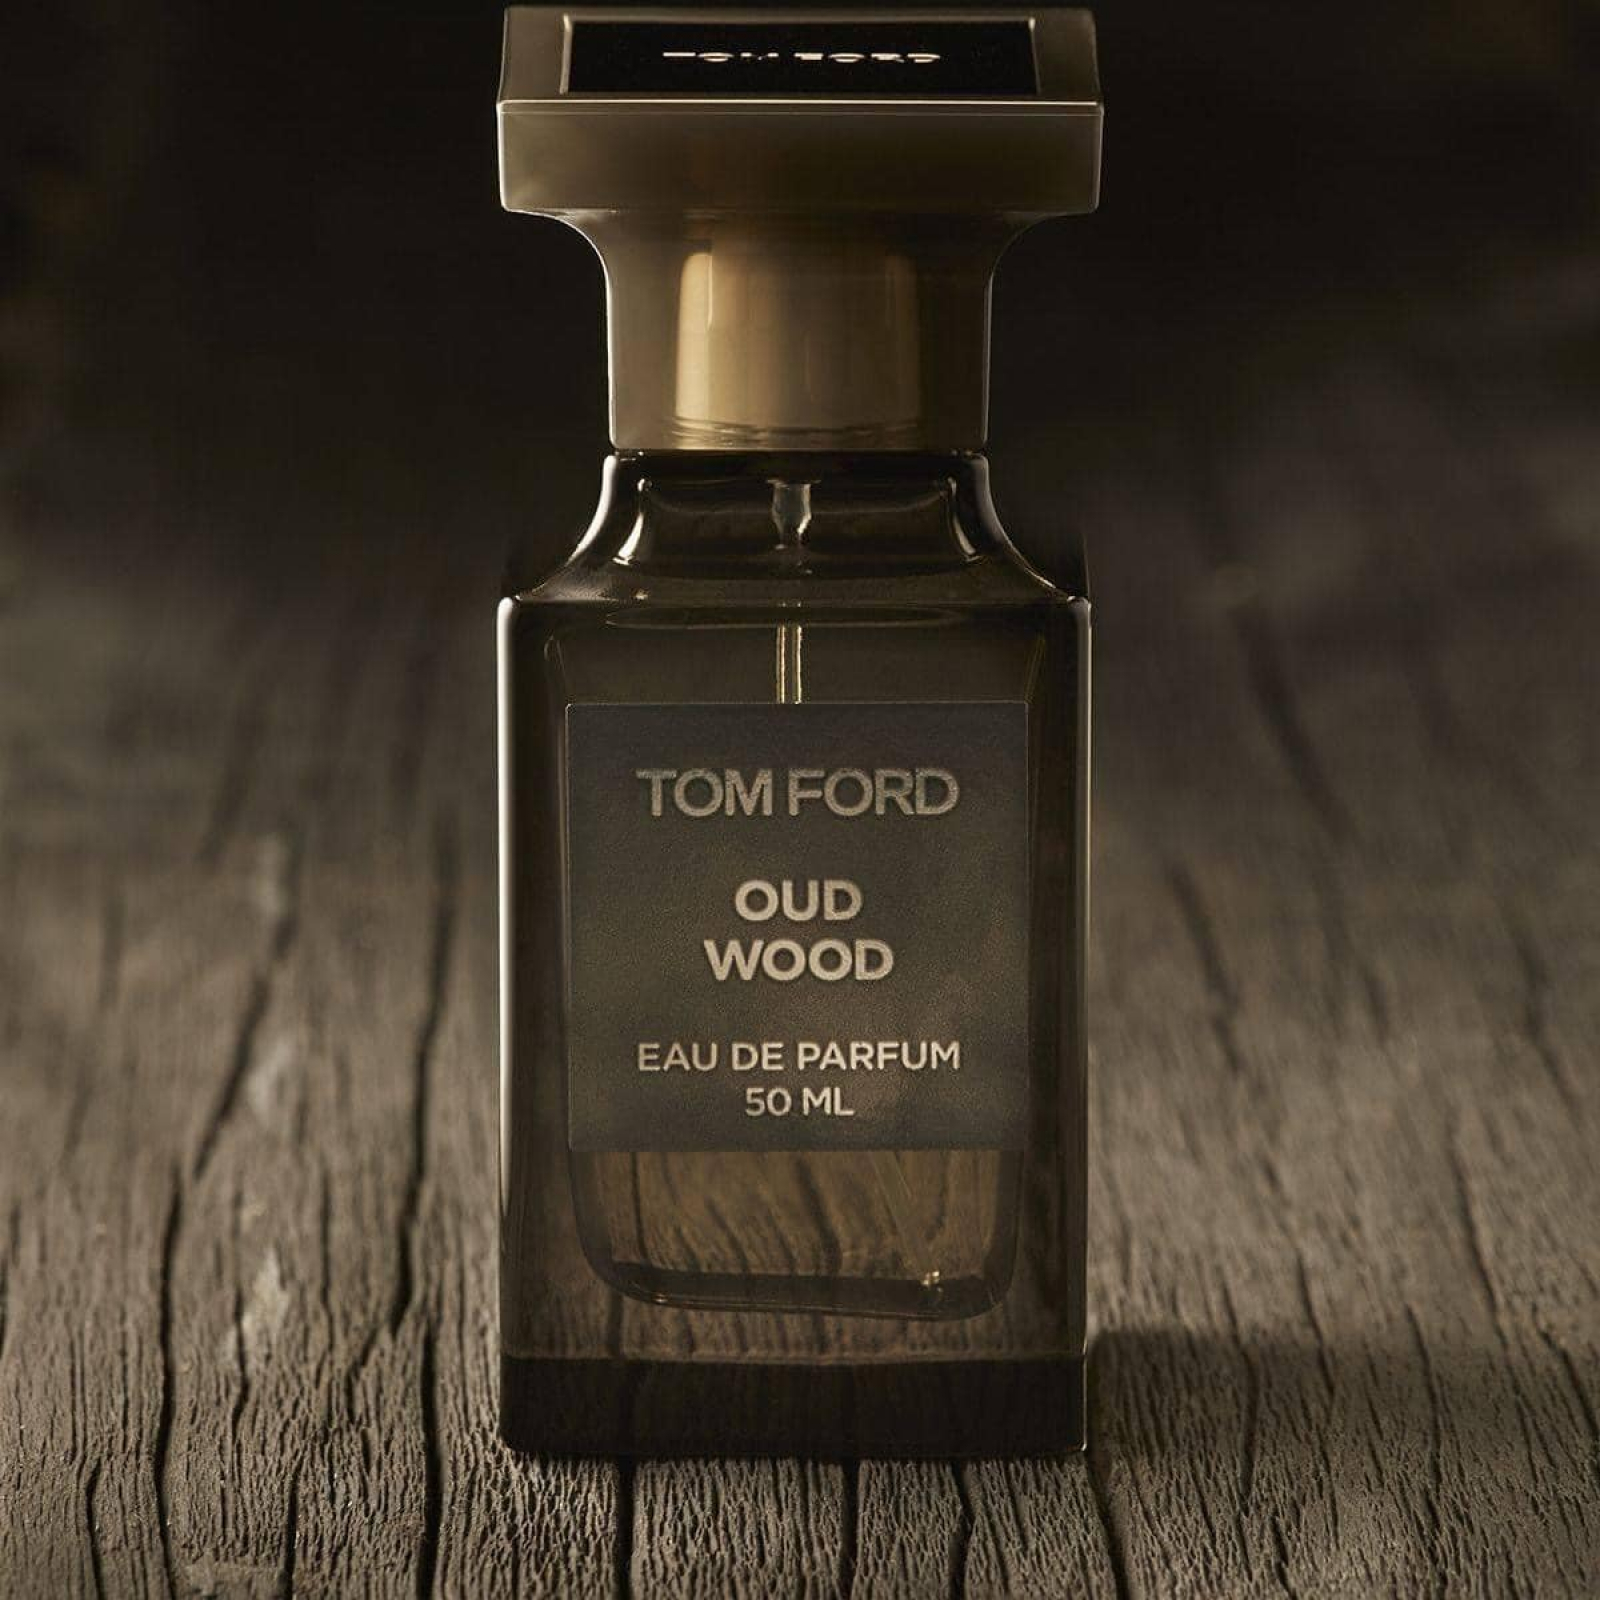 Nước Hoa Tom Ford Oud Wood cho nam nữ chính hãng xách tay mỹ cao cấp tại hcm